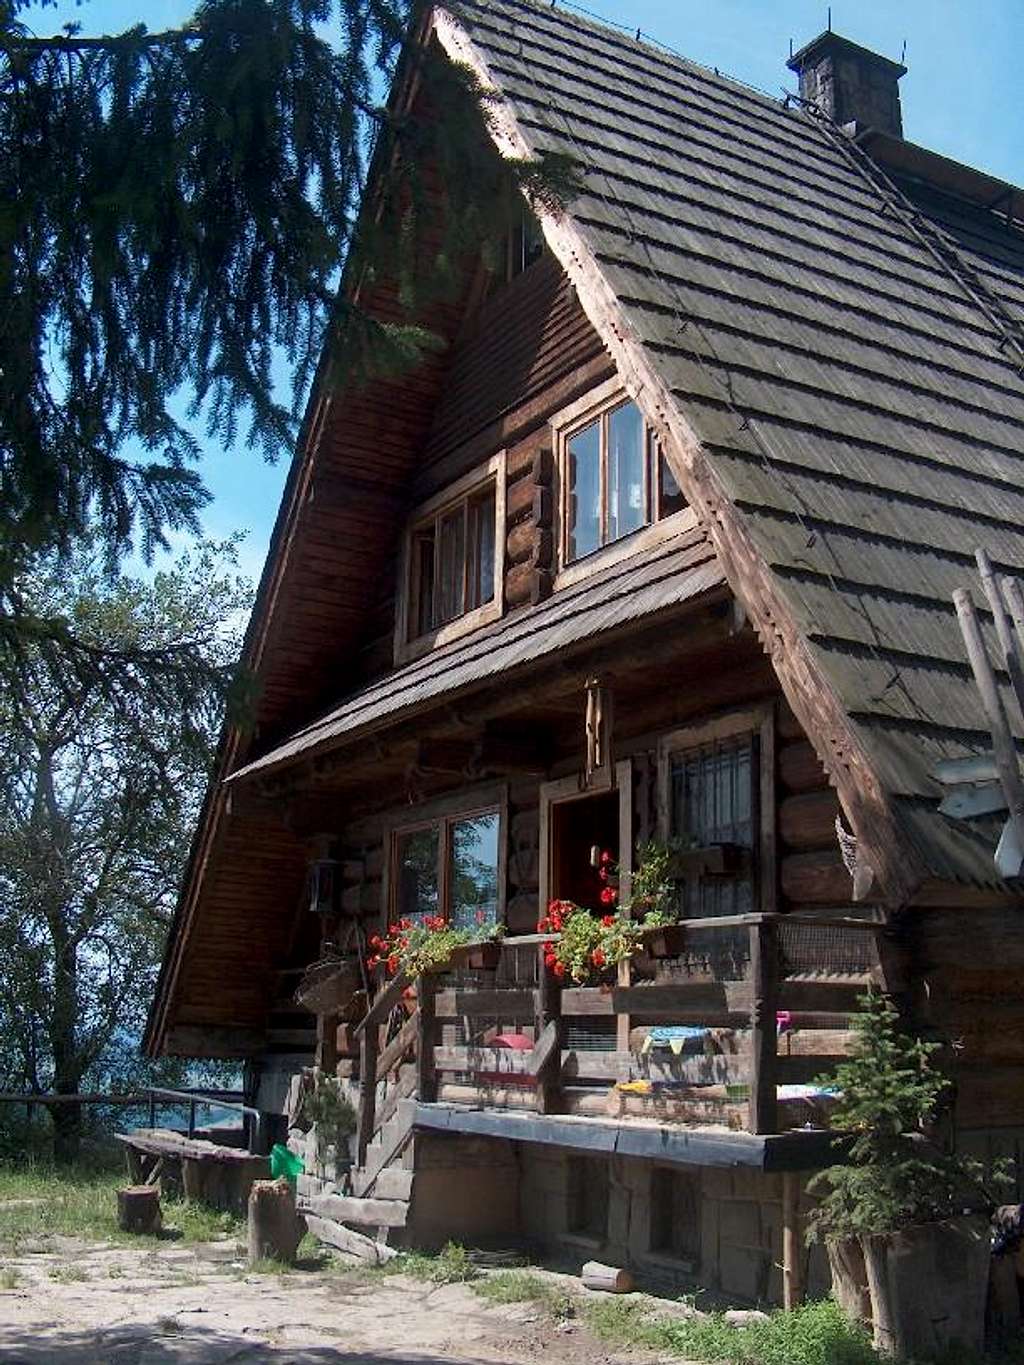 Maciejowa hut, Gorce